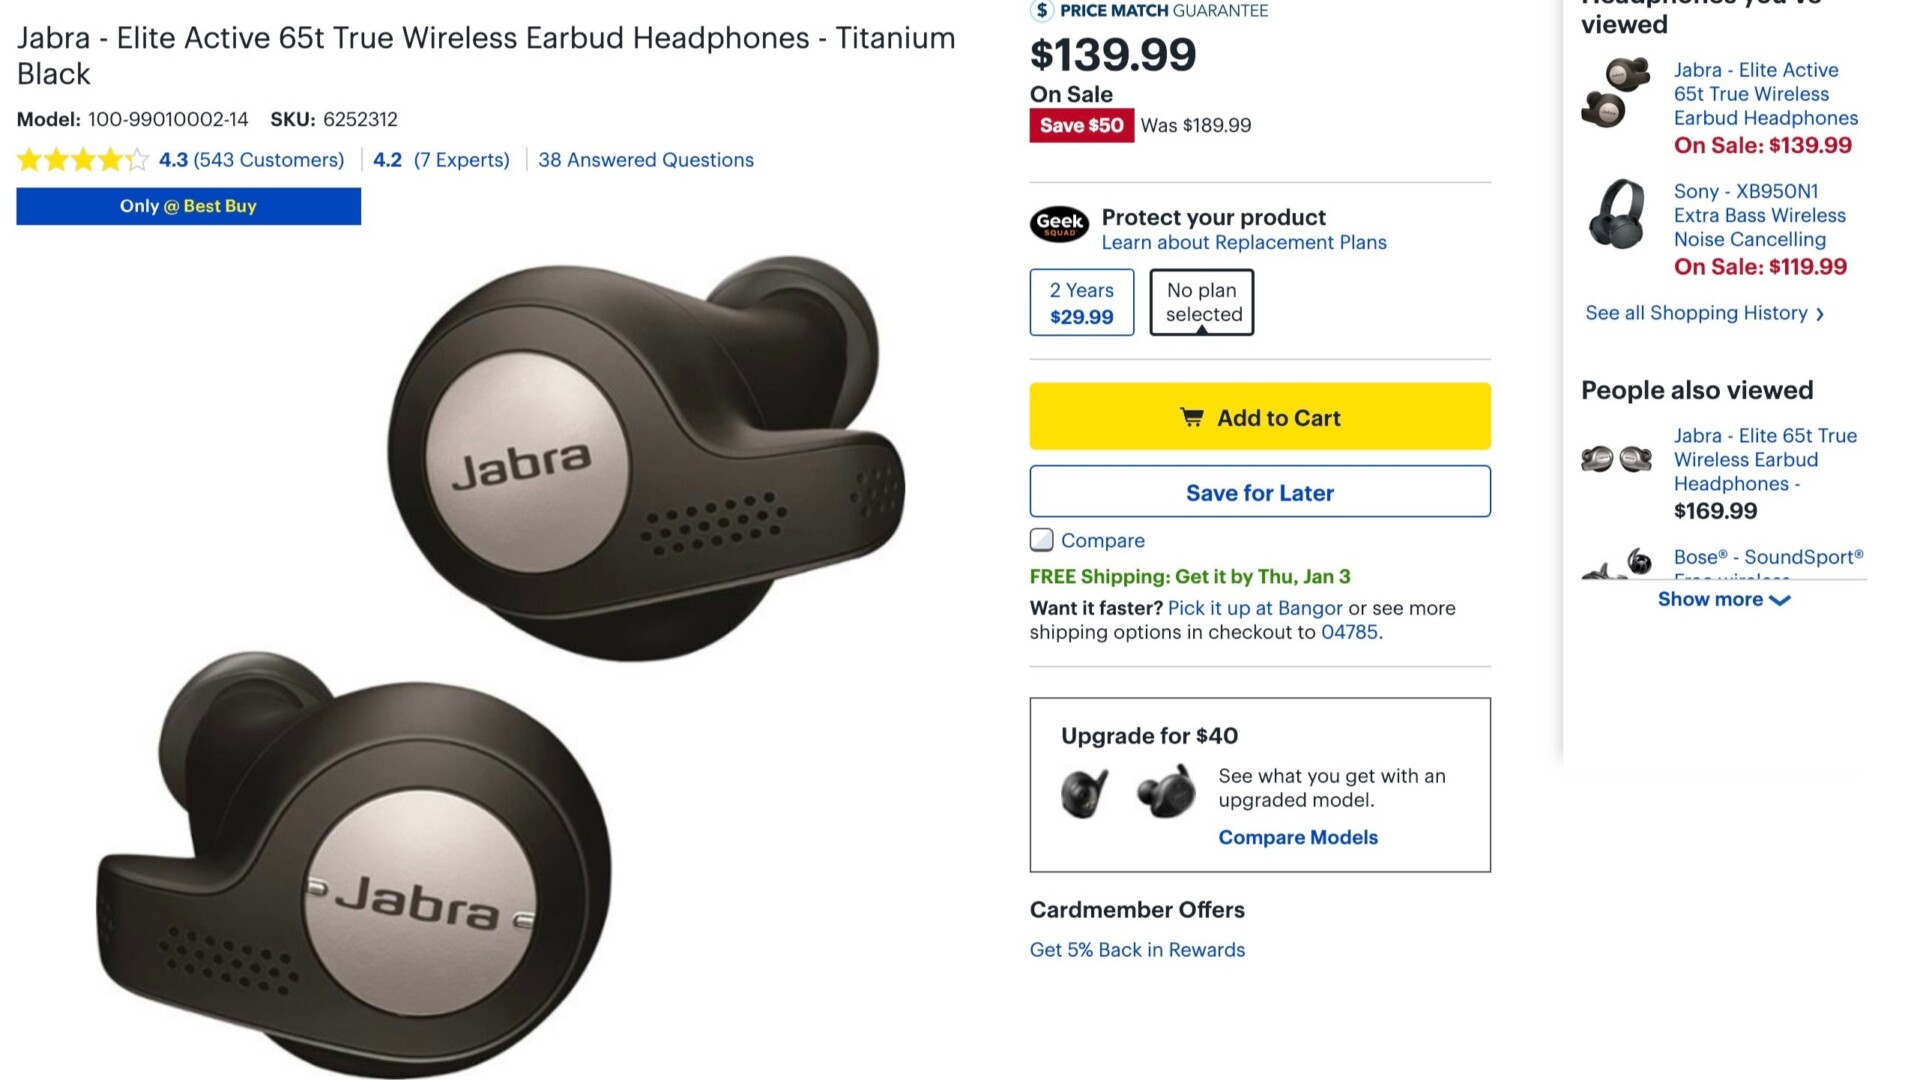 Jabra Elite Active 65t wireless earbuds deal